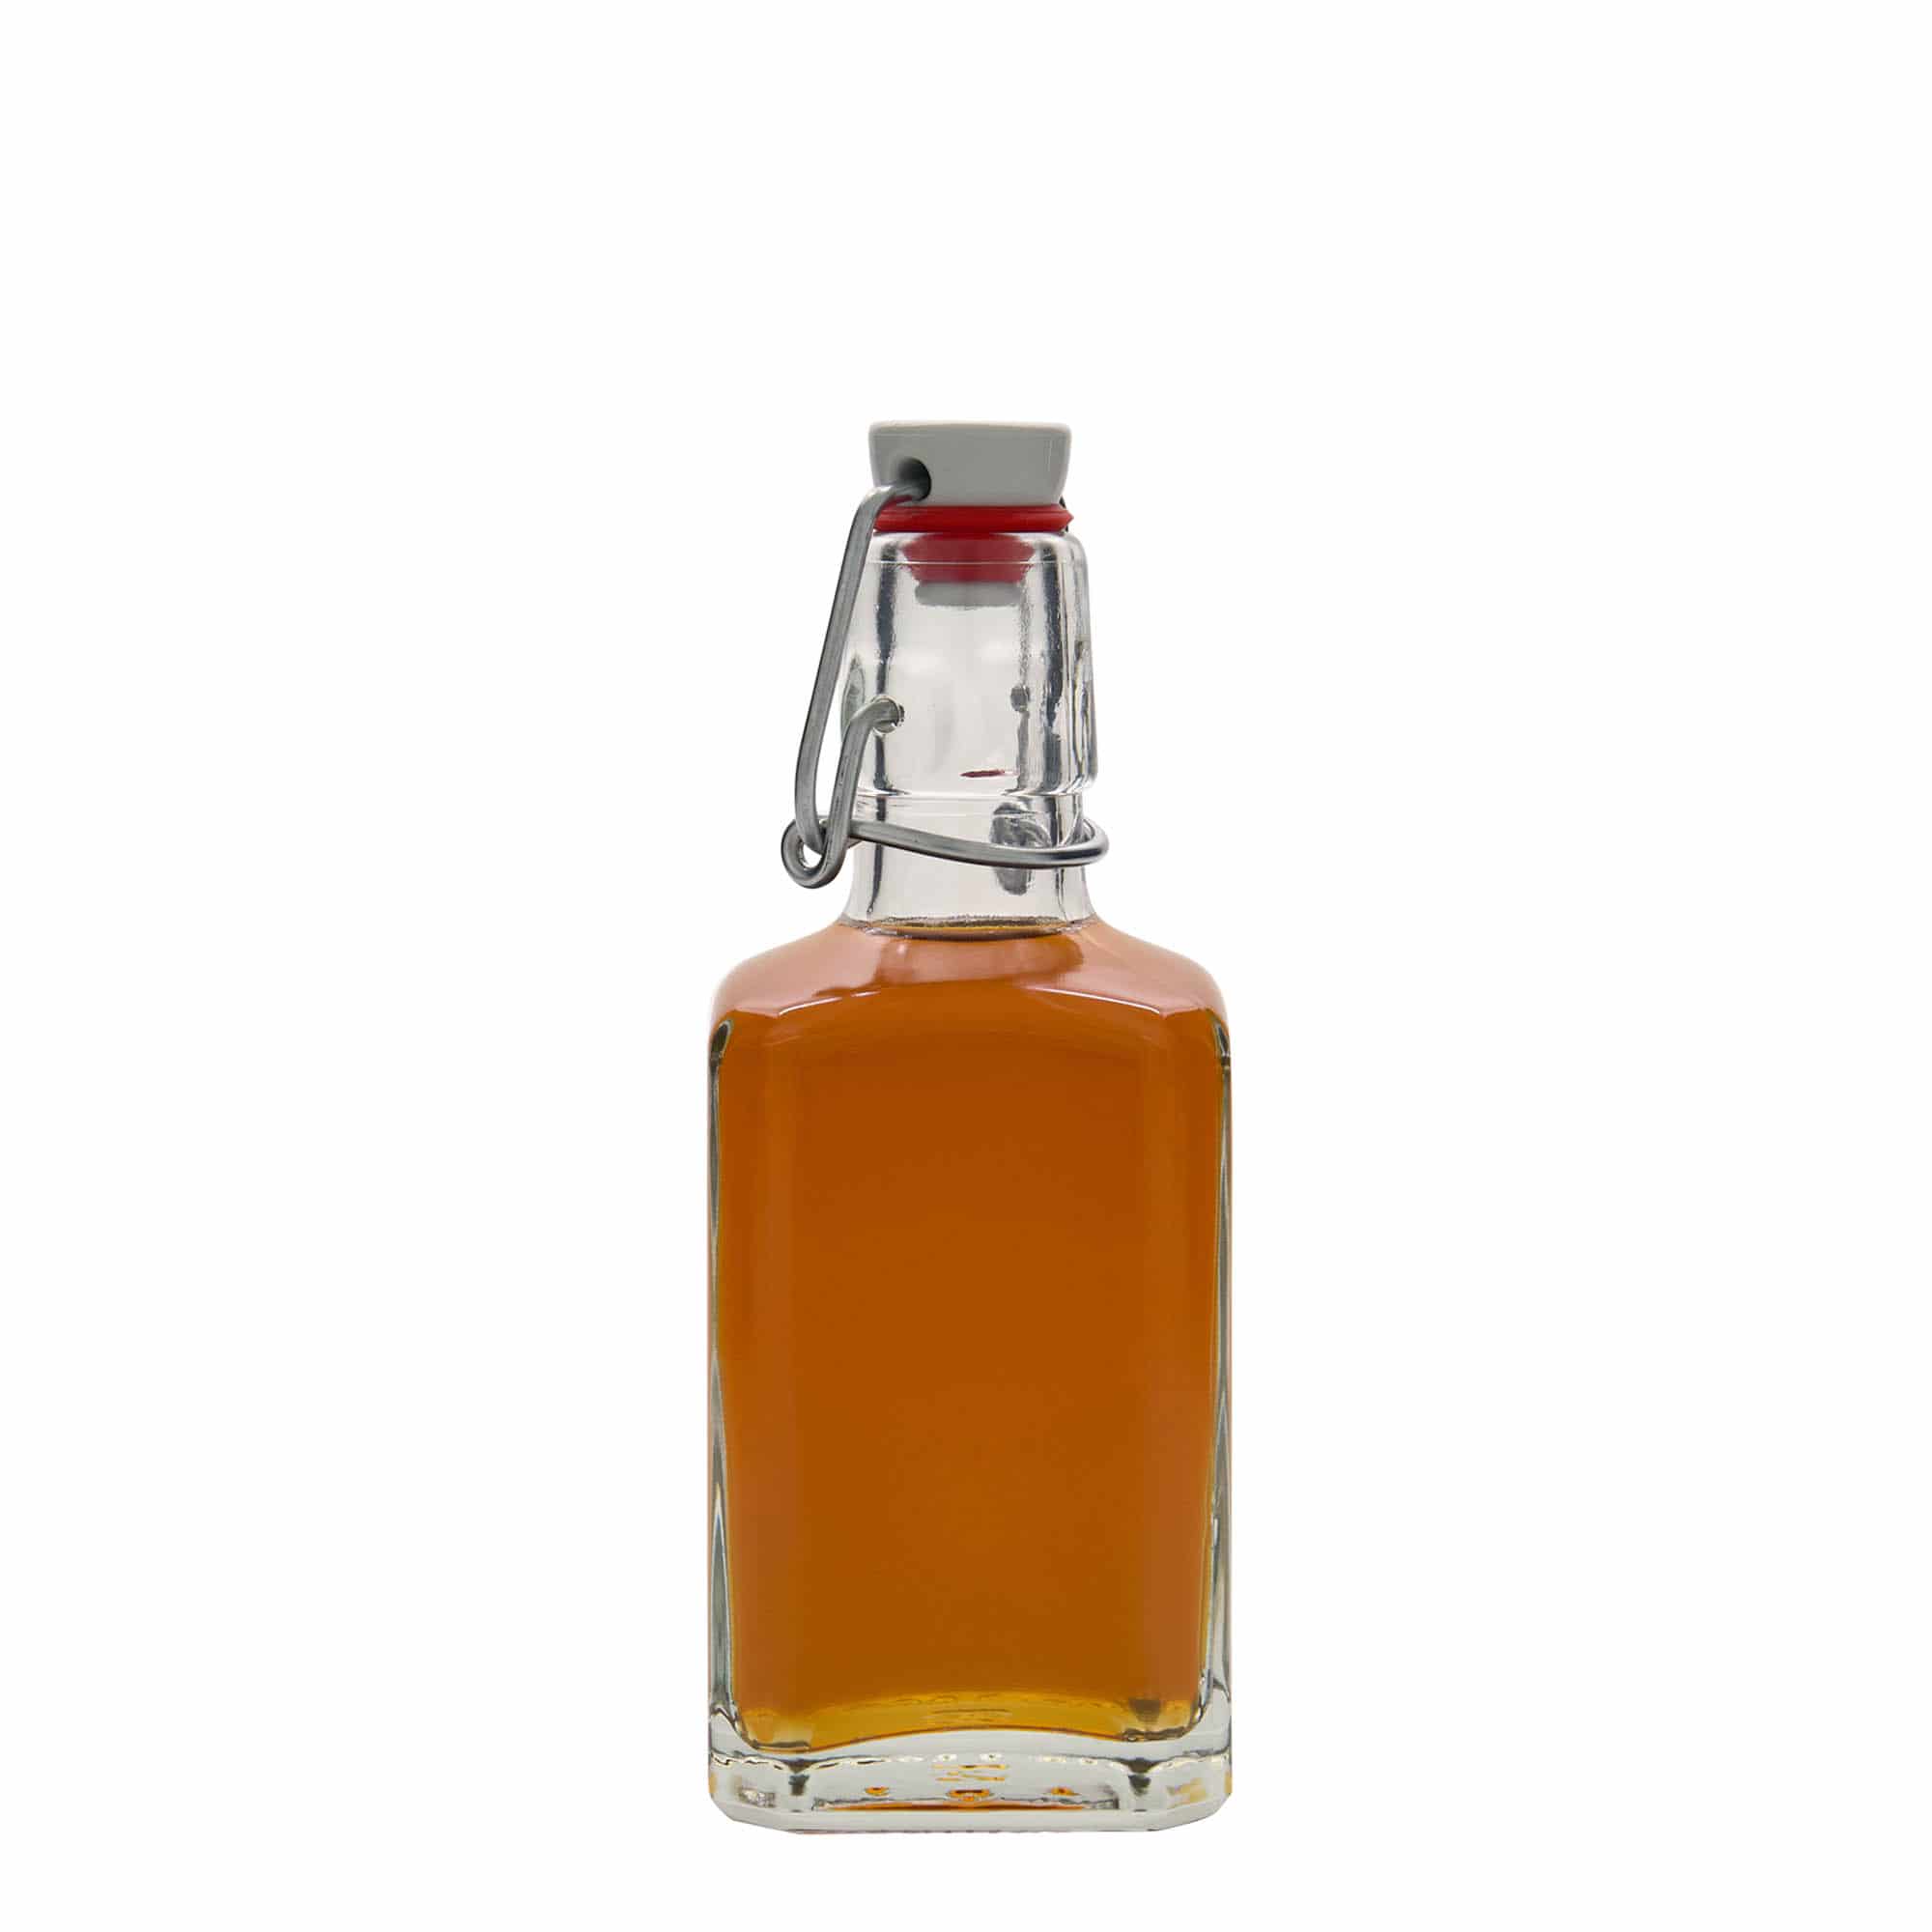 250 ml glasflaske 'Rialto', kvadratisk, åbning: Patentlåg